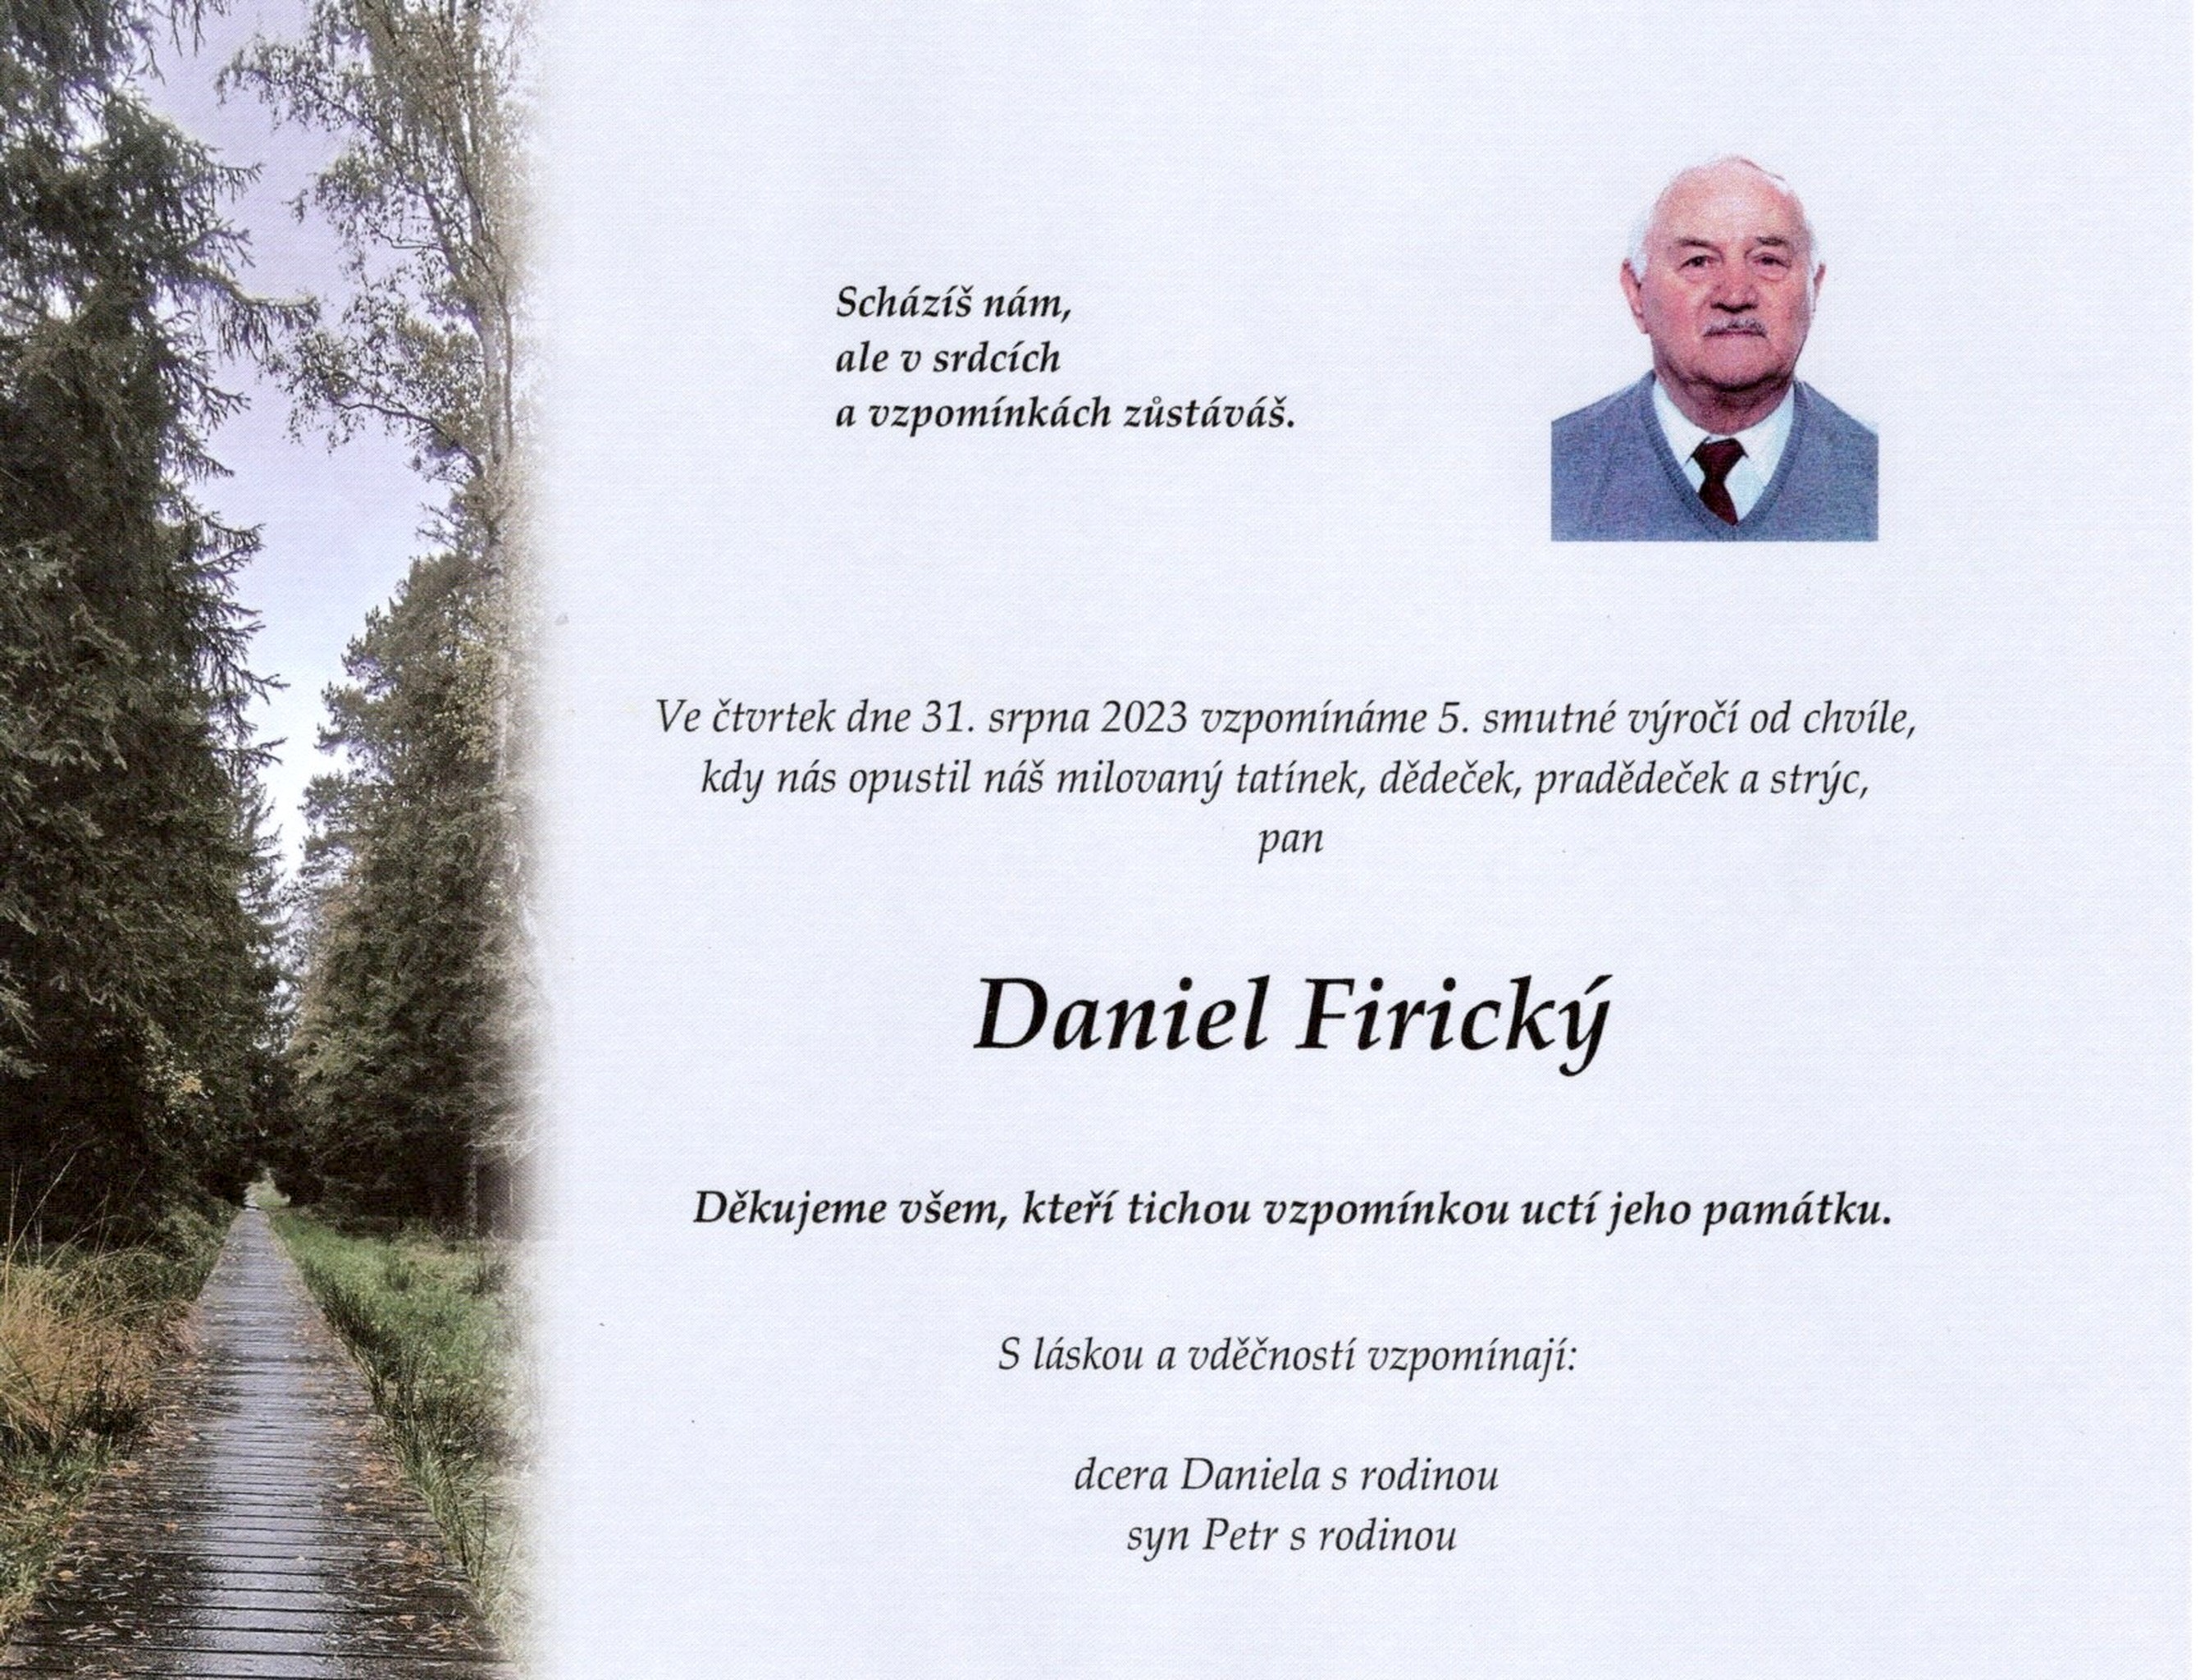 Daniel Firický